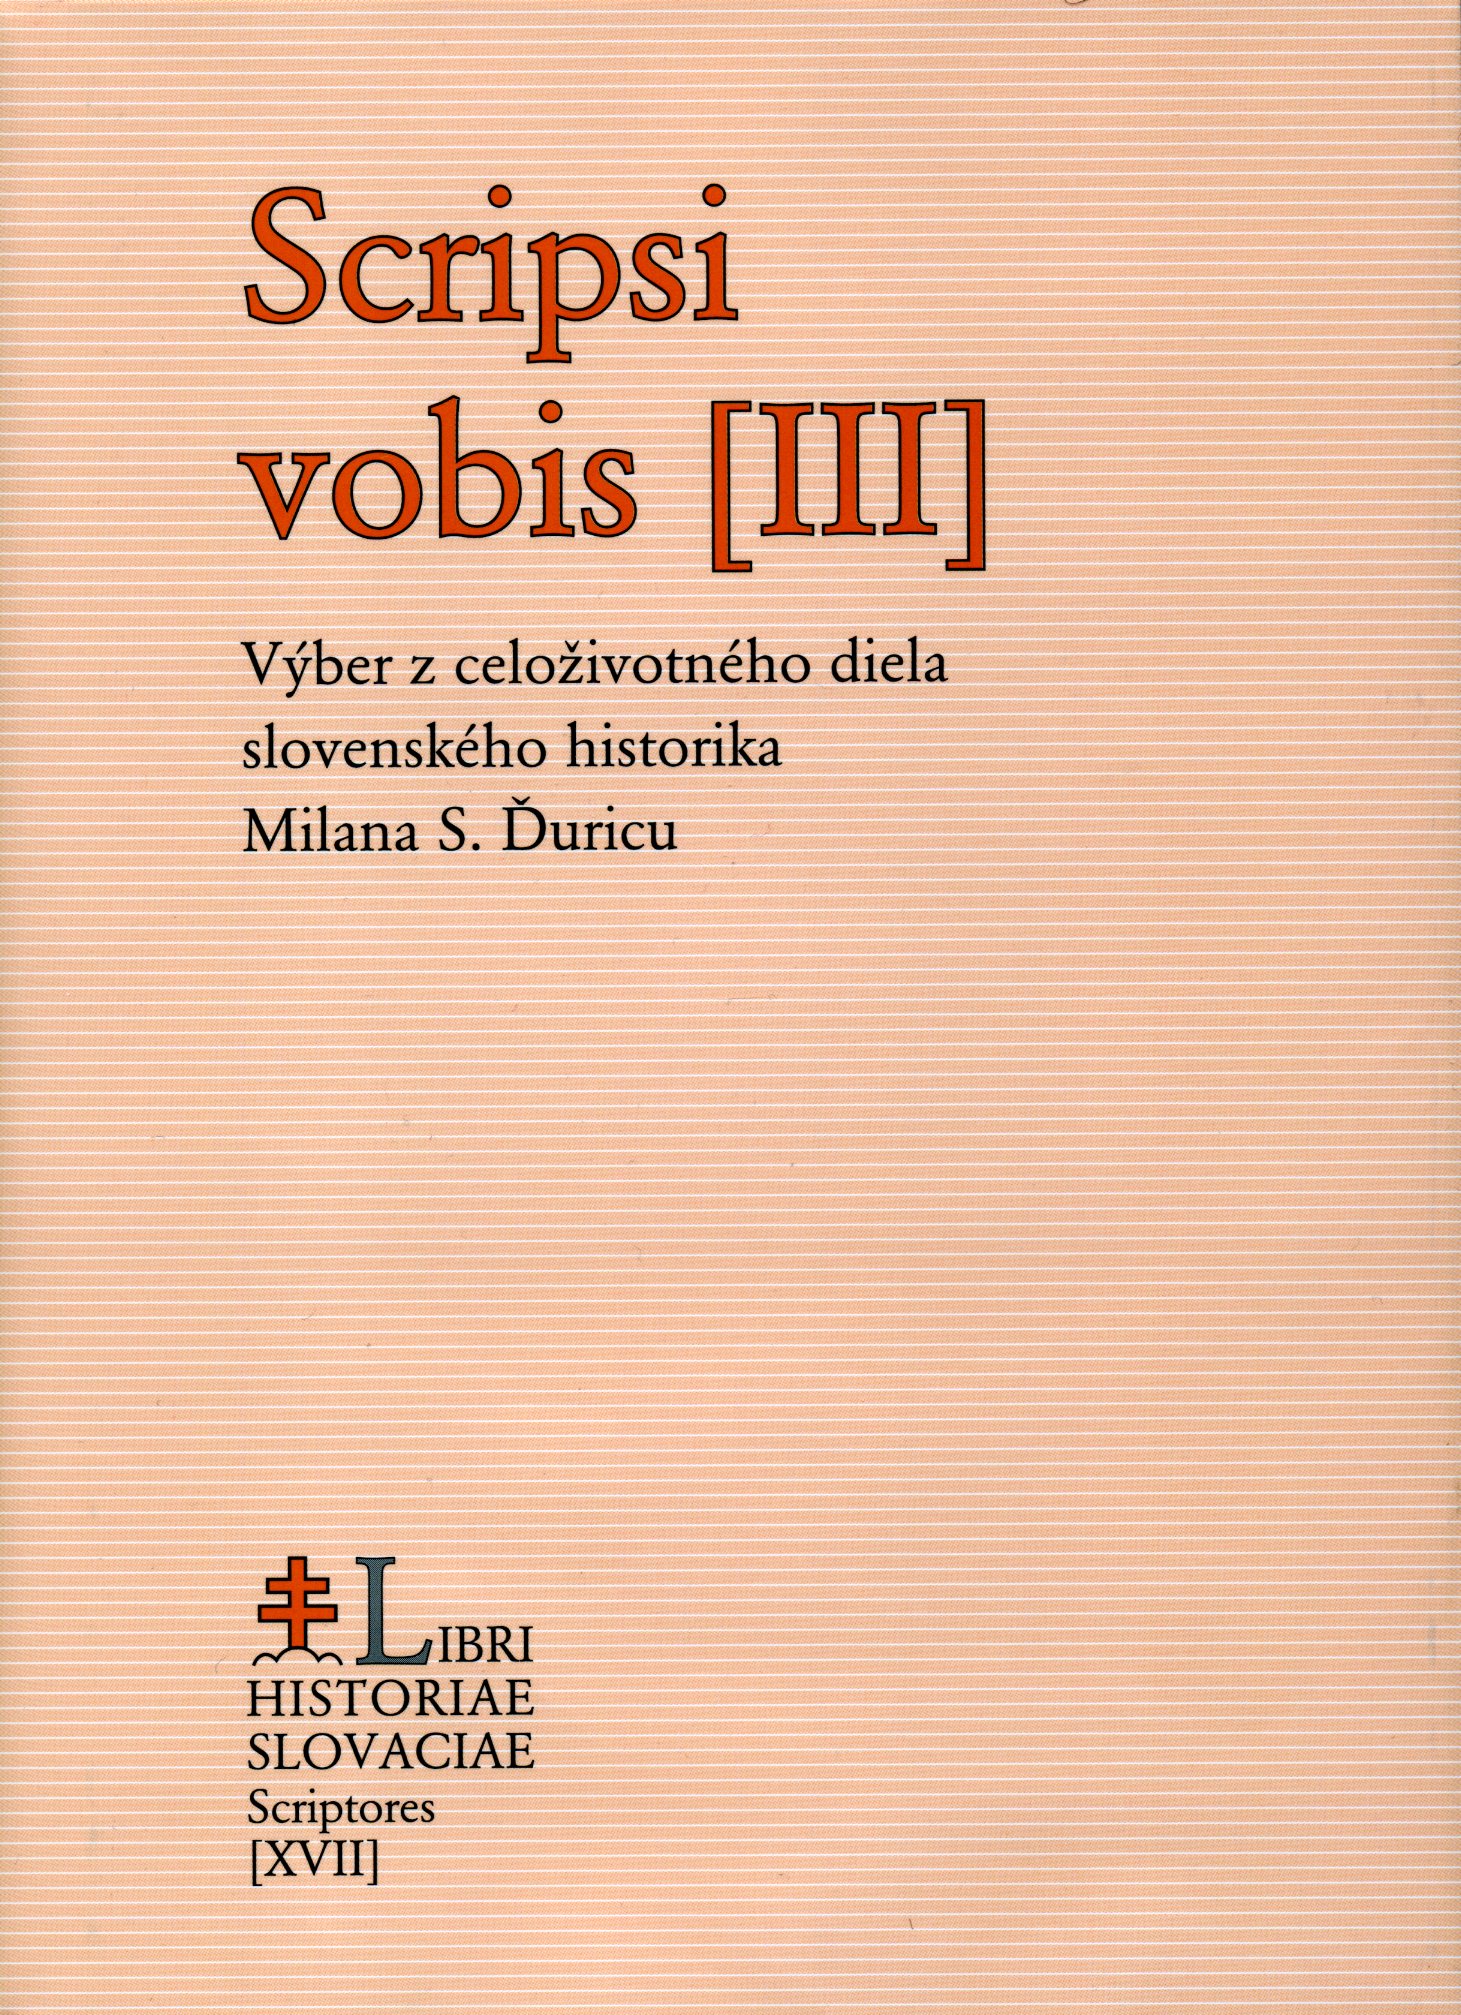 Scripsi vobis [III]